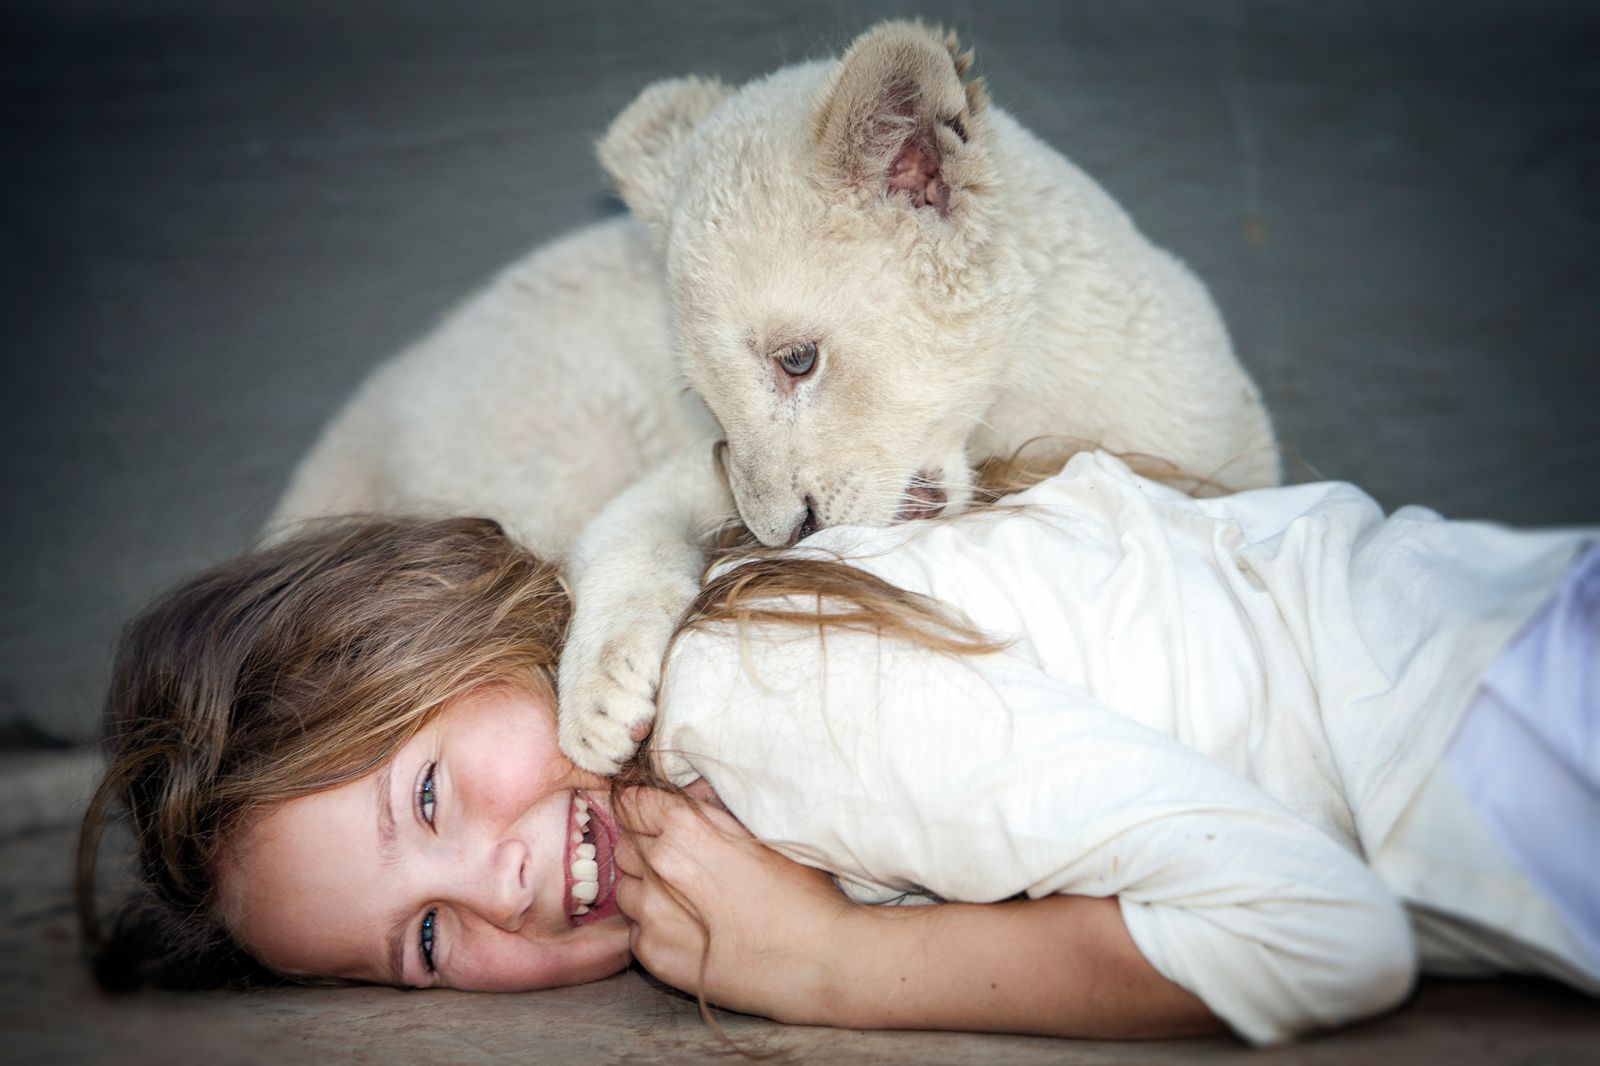 6 искренних фильмов о дружбе детей и животных